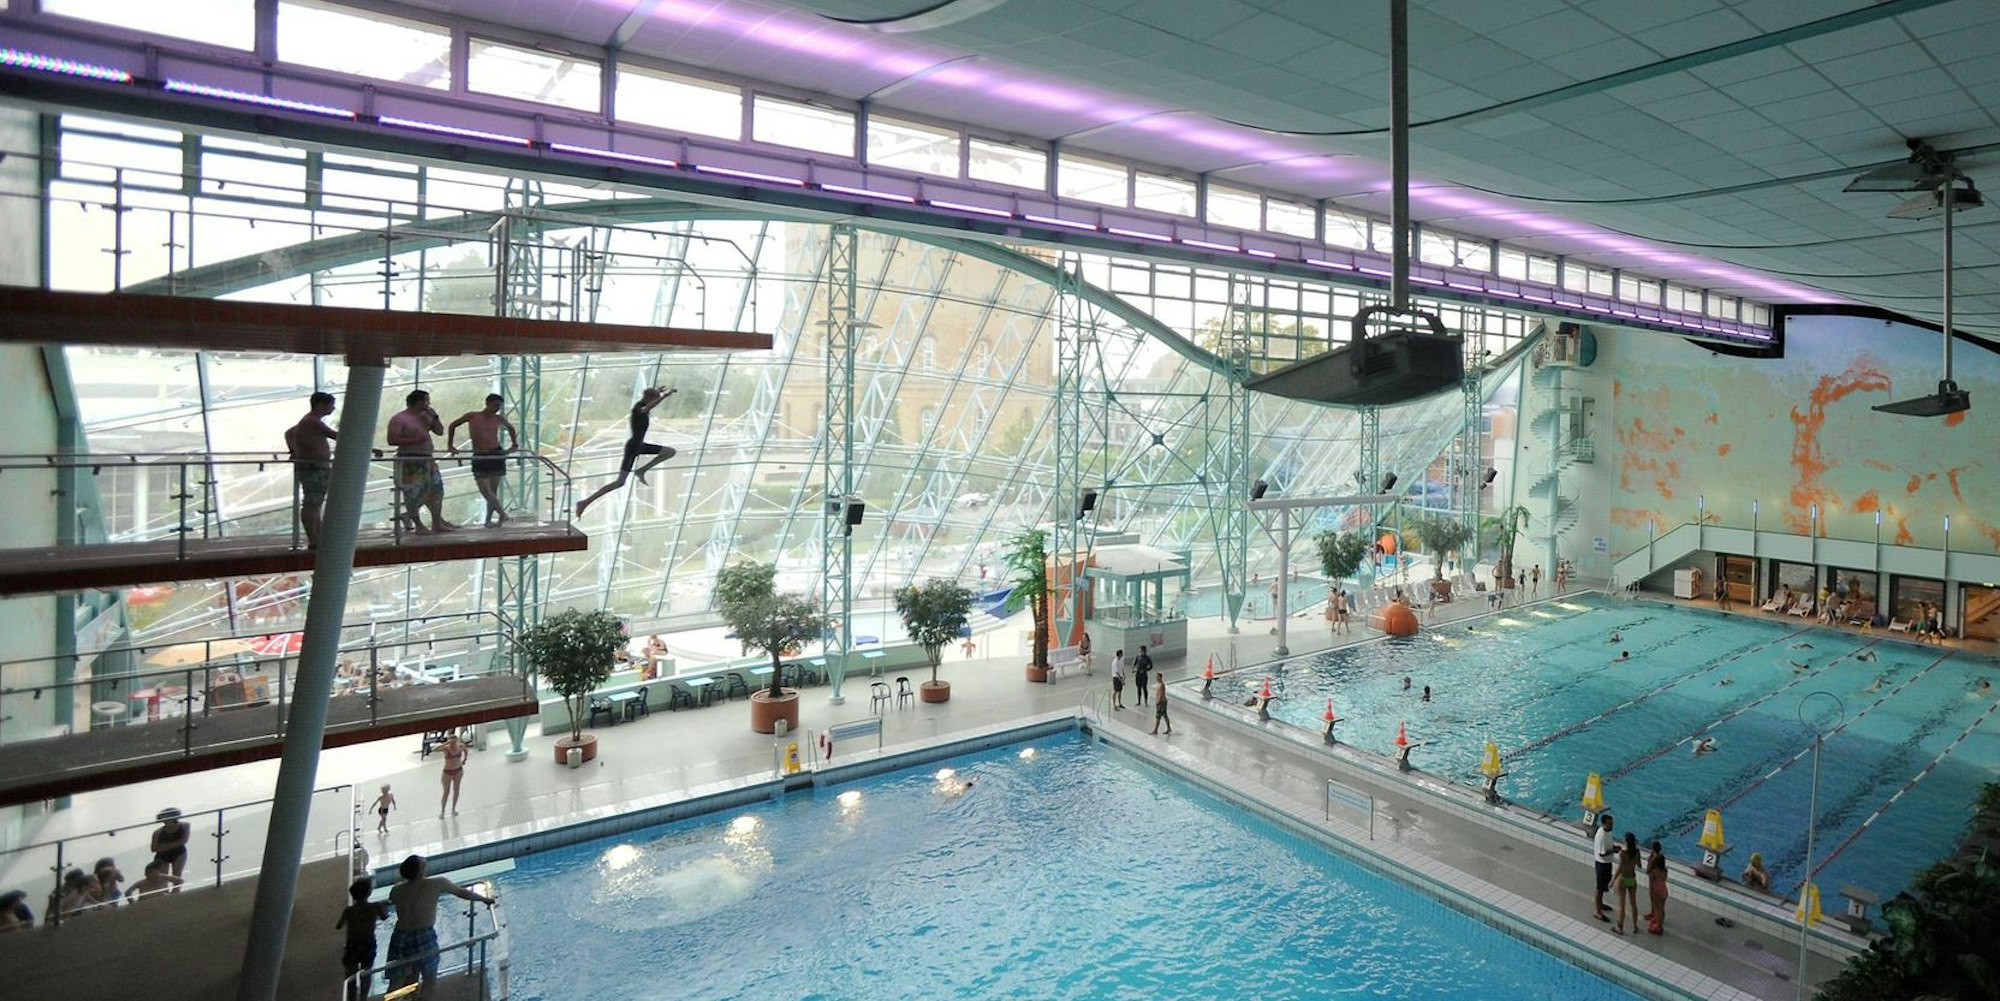 Die Schwimmhalle bietet unter anderem einen Sprungturm mit Zehn-Meter-Brett.